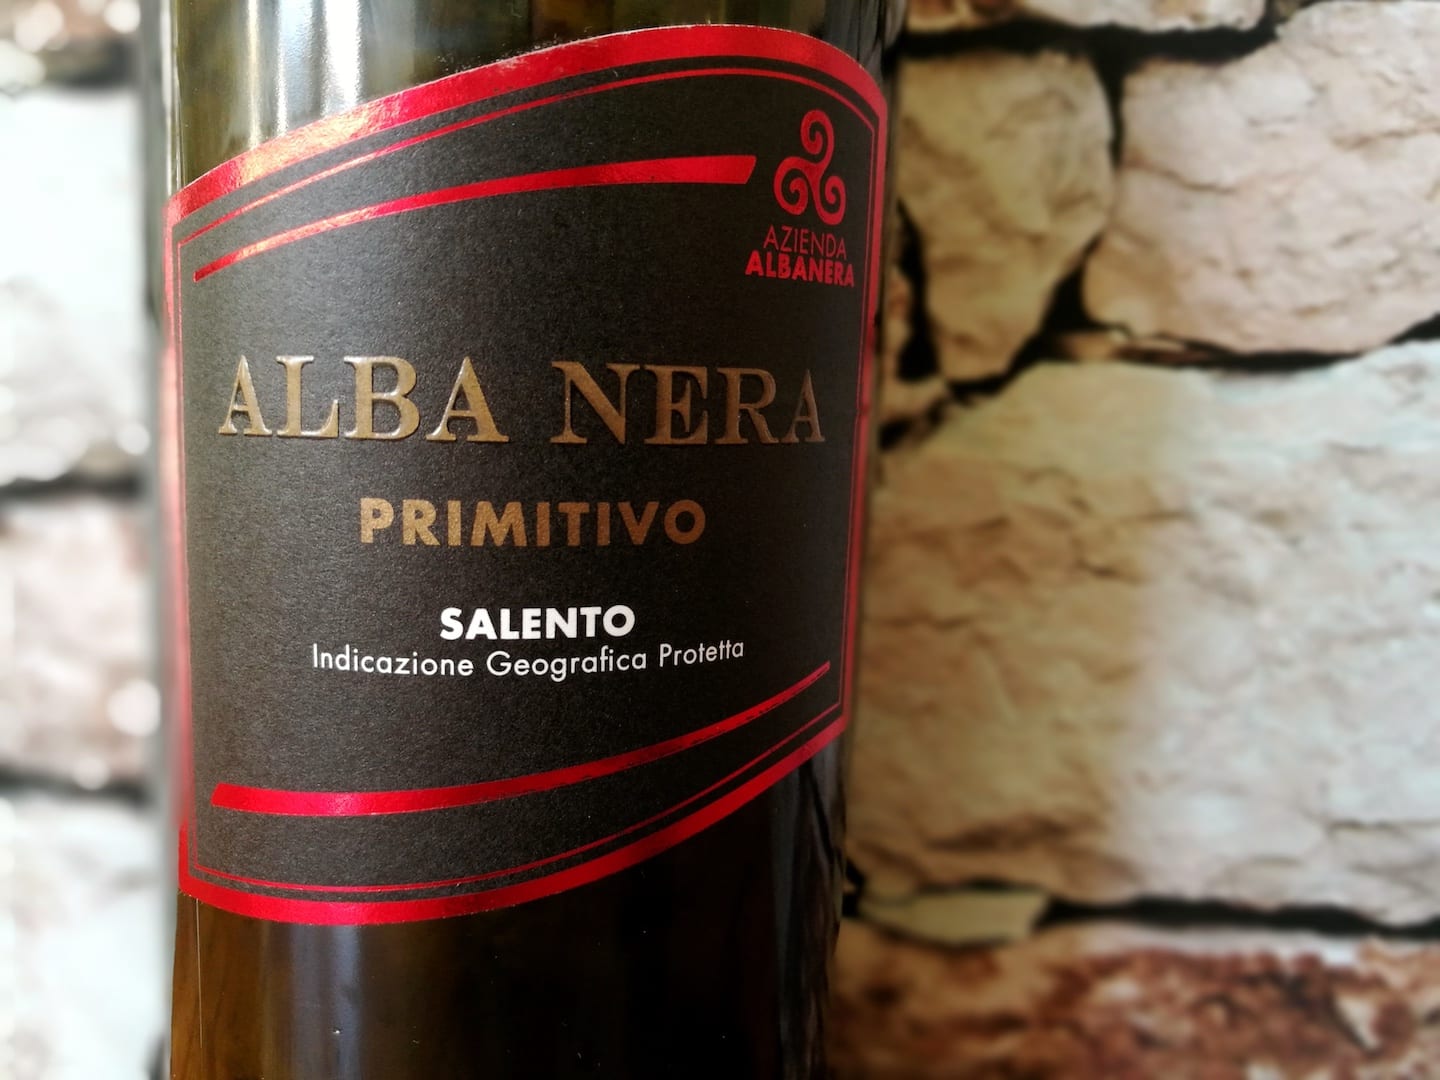 Alba Nera Primitivo 2015